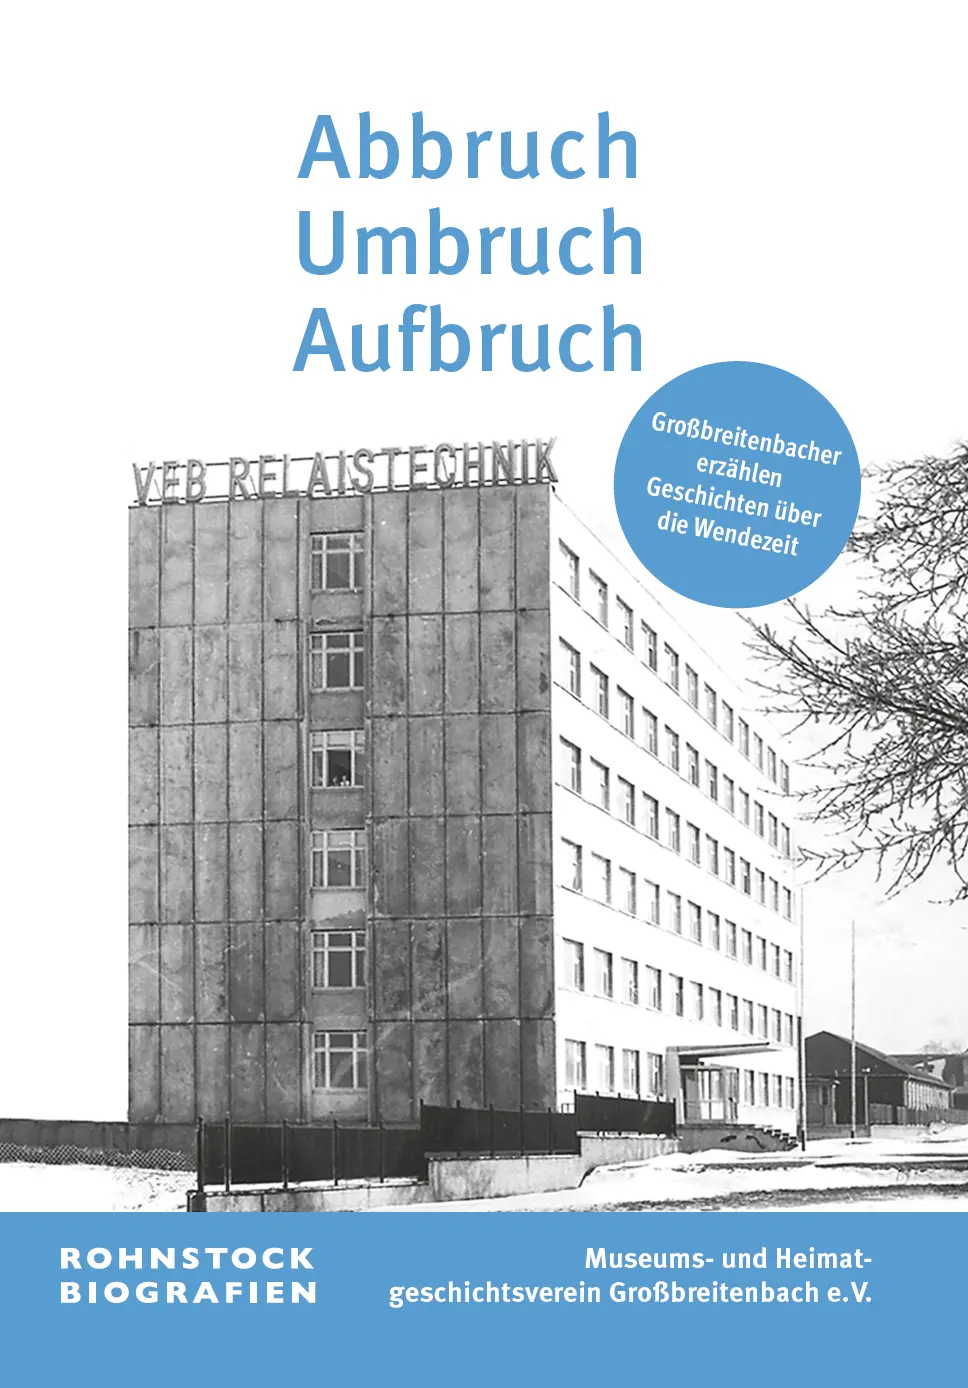 Buchcover mit dem Titel: »Abbruch, Umbruch, Aufbruch – Großbreitenbacher erzählen Geschichten über die Wendezeit«. Zu sehen das Gebäude des alten Relaiswerks in Großbreitenbach.